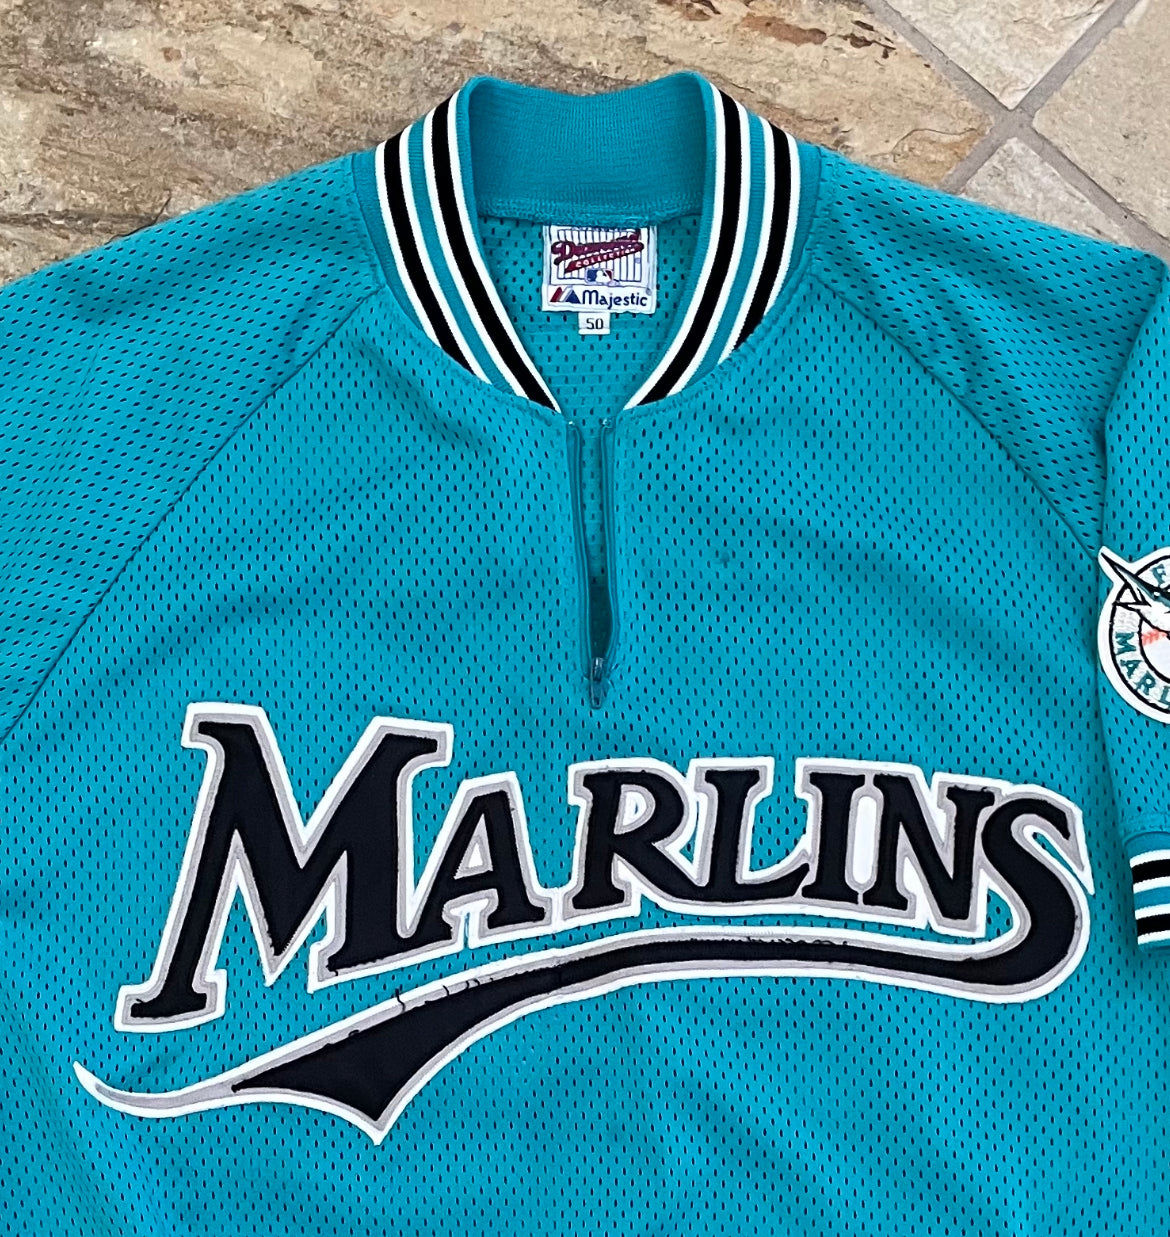 Men's Florida Marlins Throwback VINTAGE Baseball jersey #8 Andre